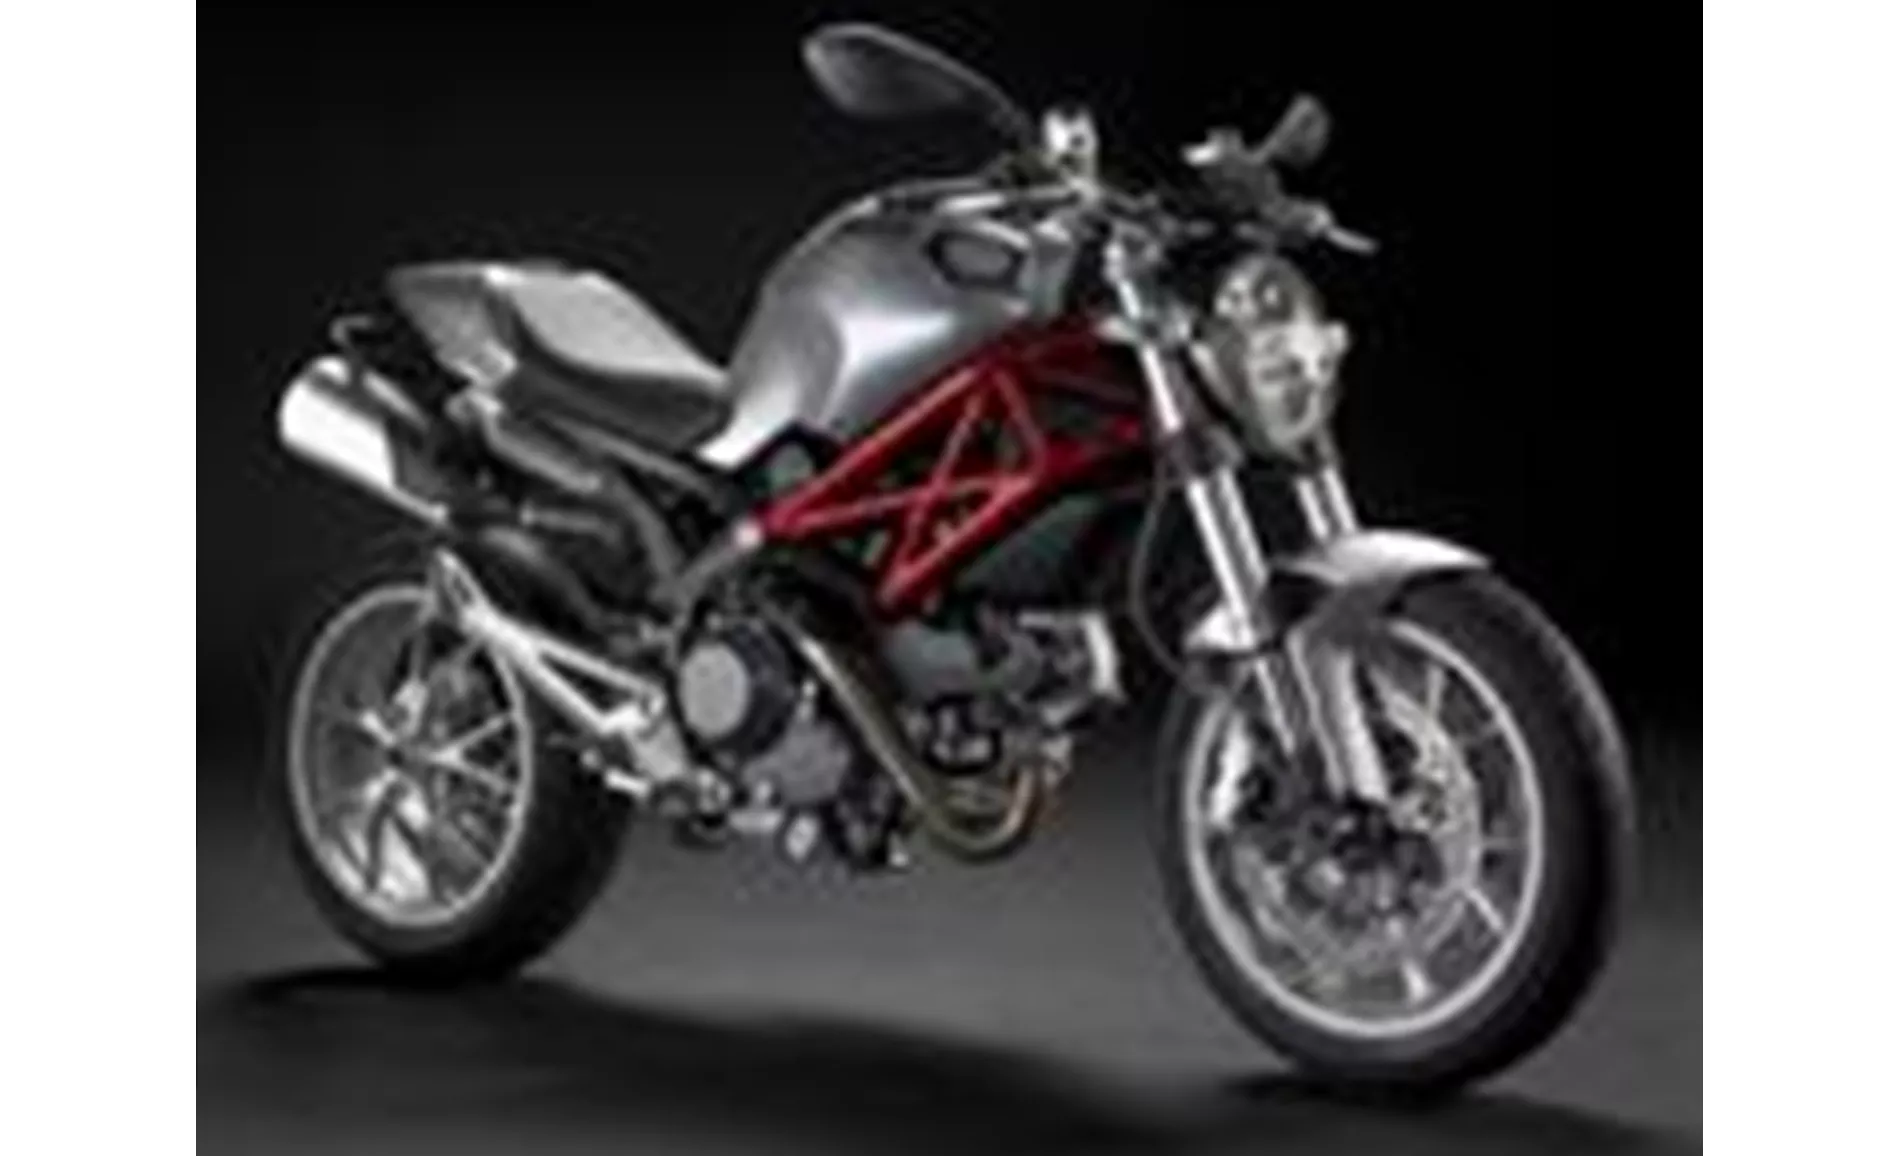 Ducati Monster 1100 2010